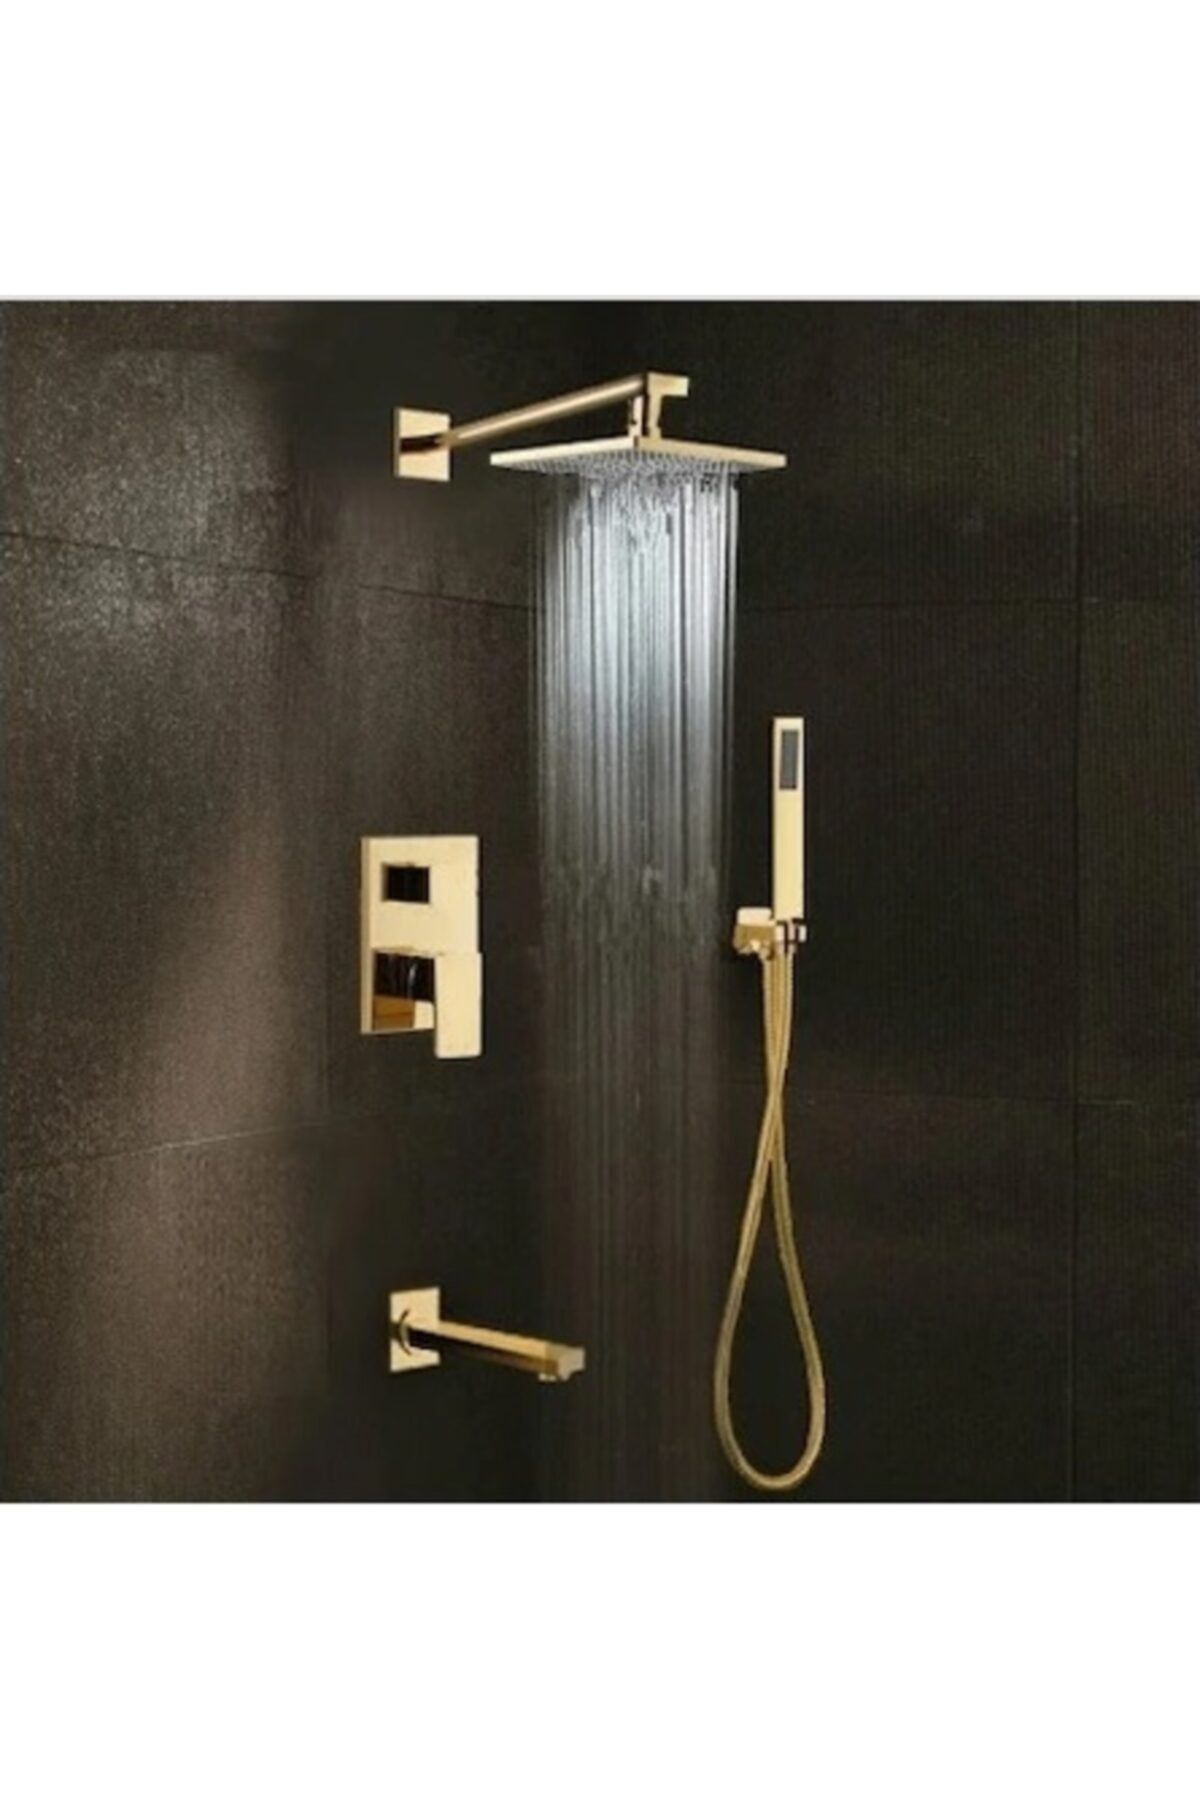 OEM Banyo Bataryası Duş Seti Ankastre Gold Altın Dore 30x30 Tepe Duş Yeni Ürün 5 Yıl Garantili